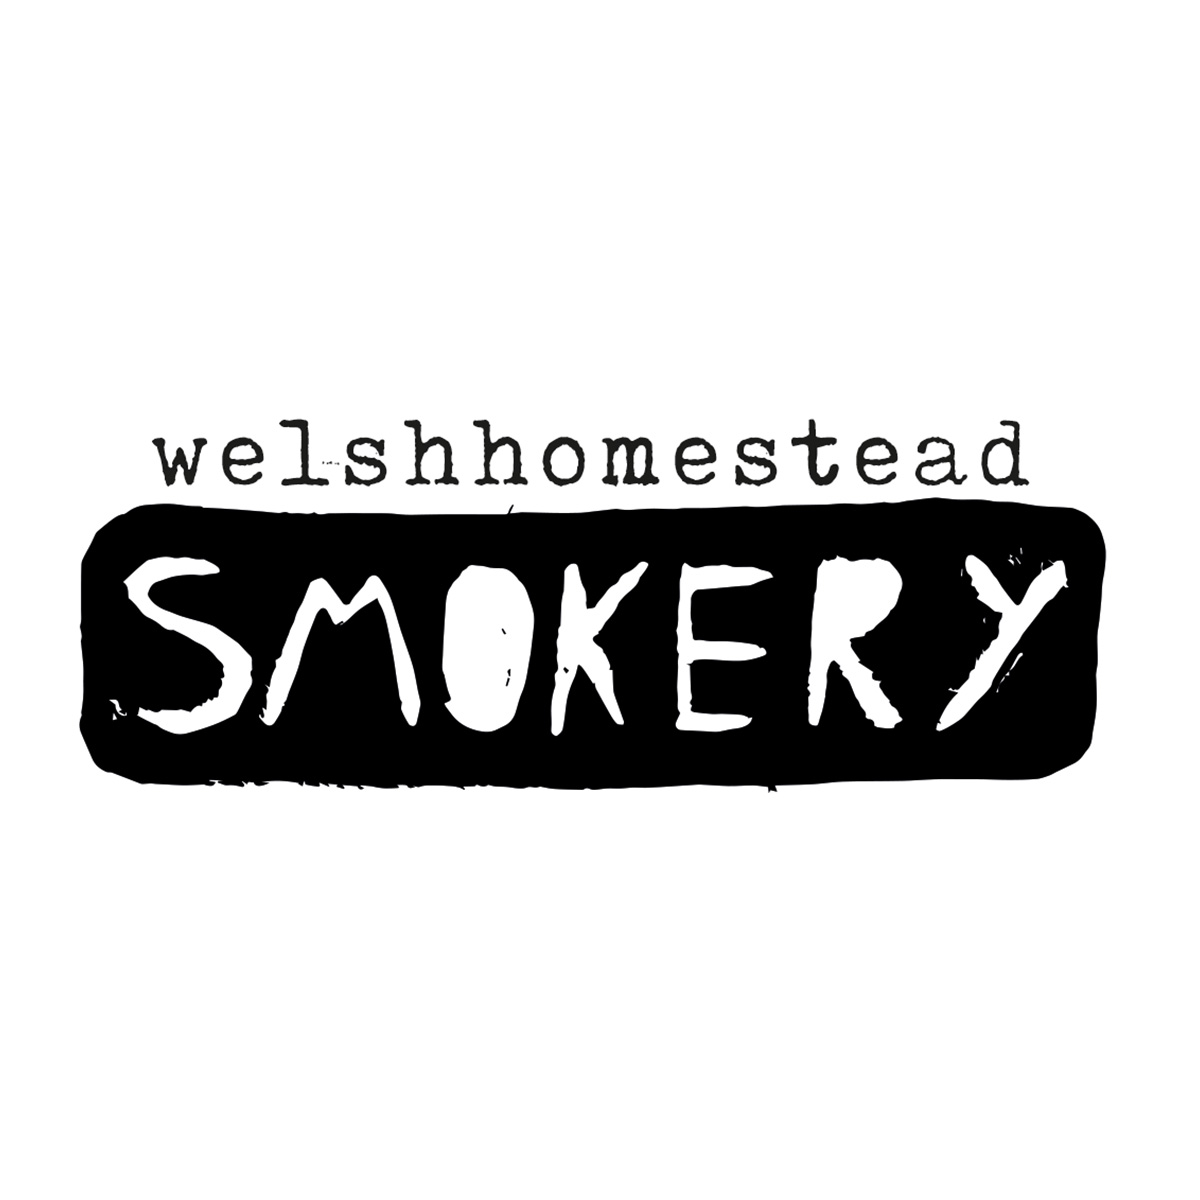 Welshhomestead Smokery